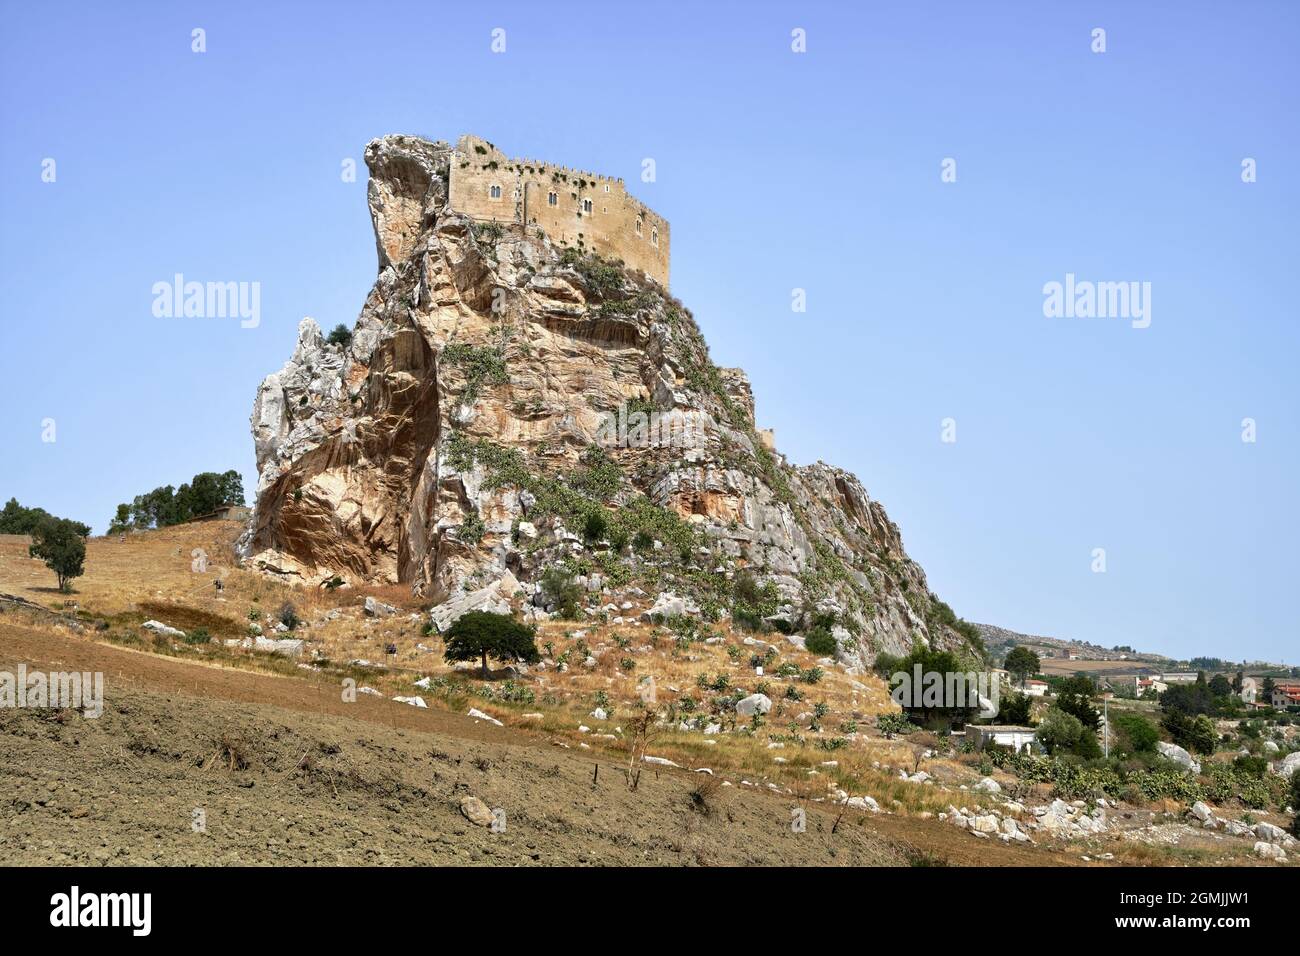 Castello medievale in Sicilia antica fortezza di Mussomeli (Caltanissetta) Foto Stock